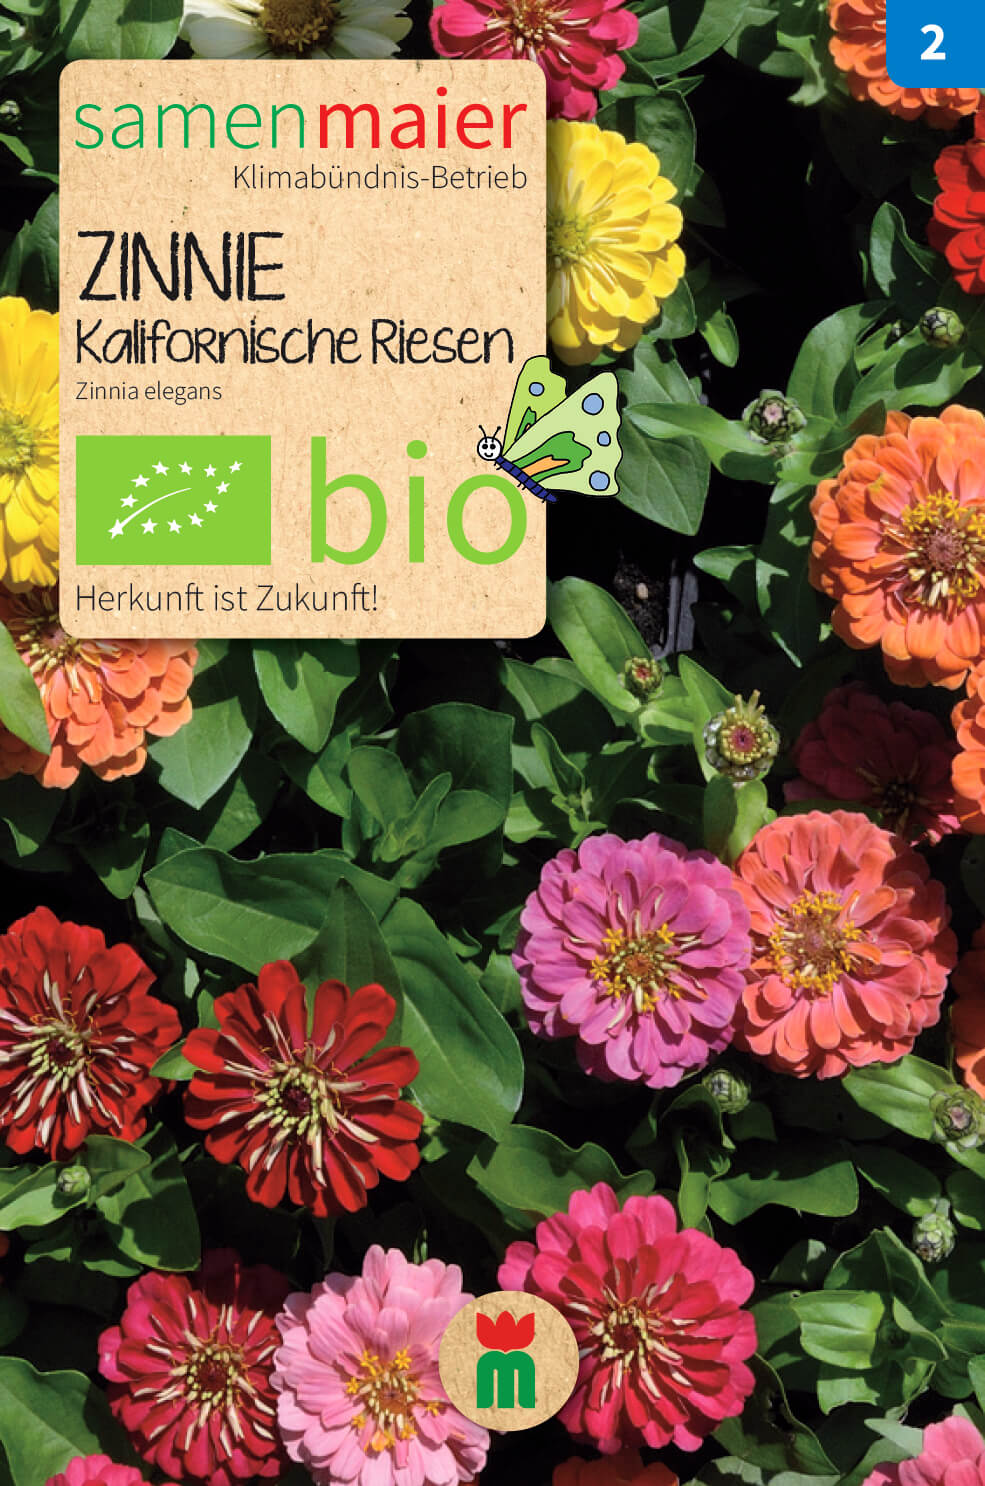 Beet-Box "Für einen Blumengruß" | BIO Blumensamen-Sets von Samen Maier